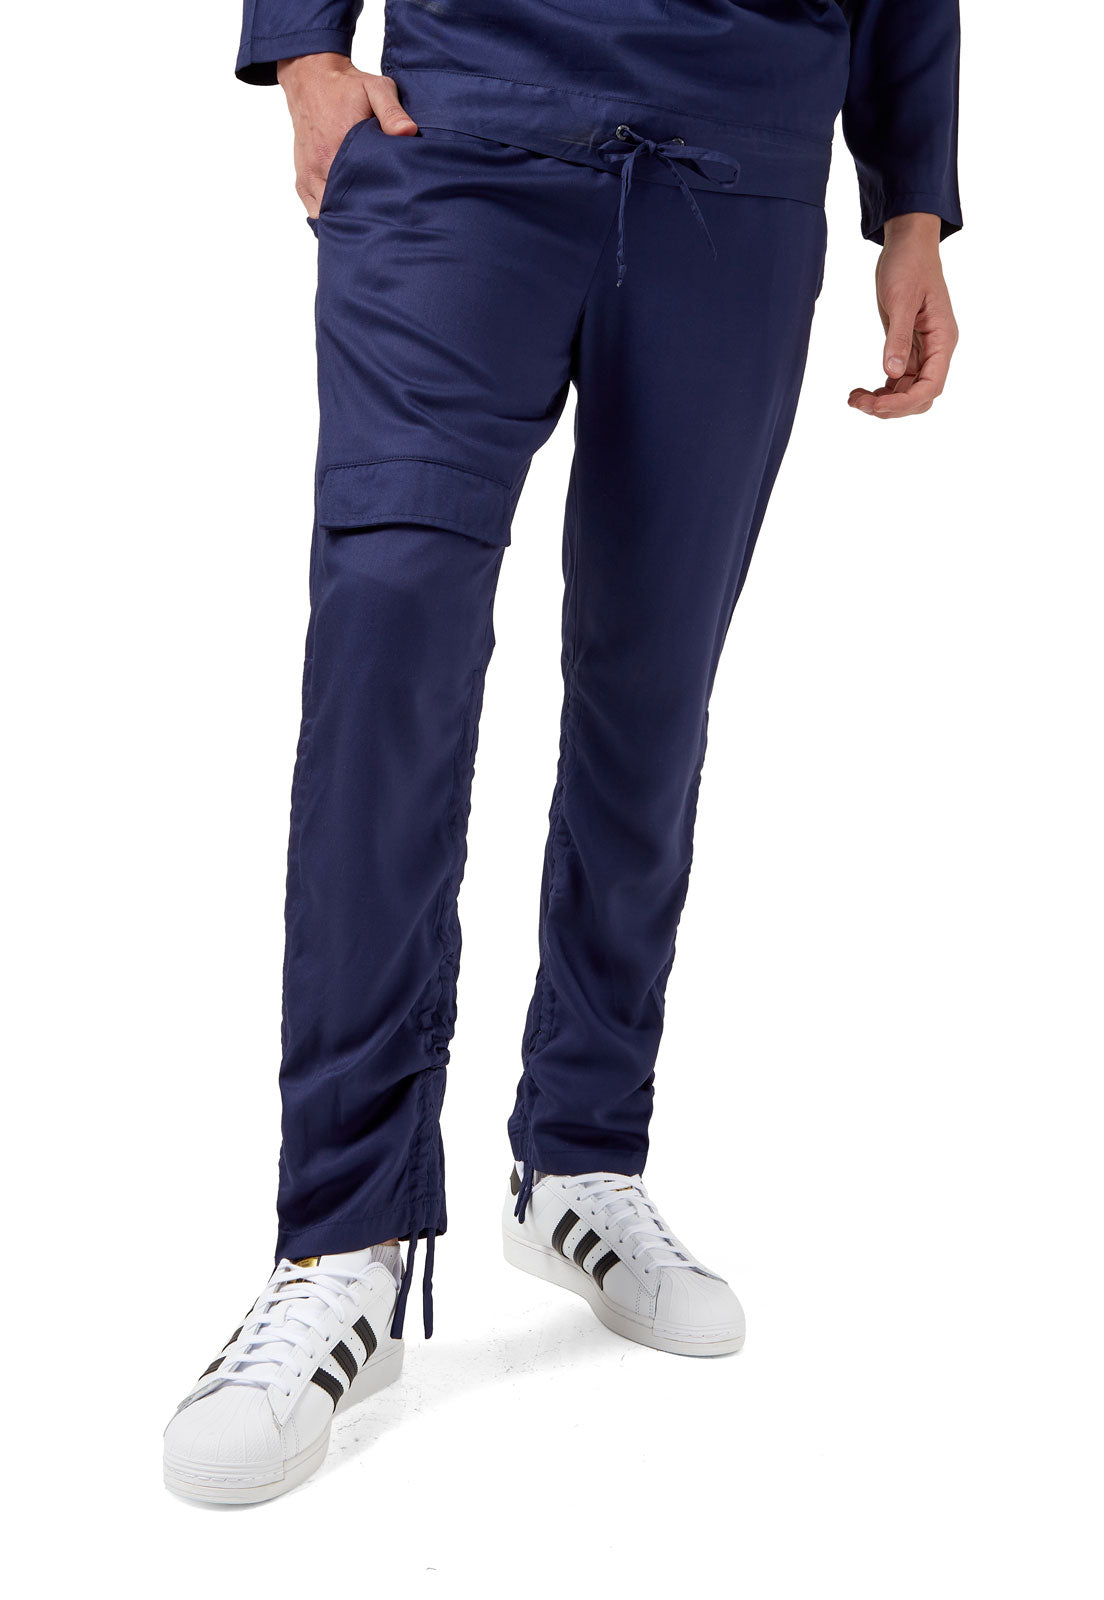 Pantalón retráctil azul náutico de OSOP Mansion, new Fluid chic